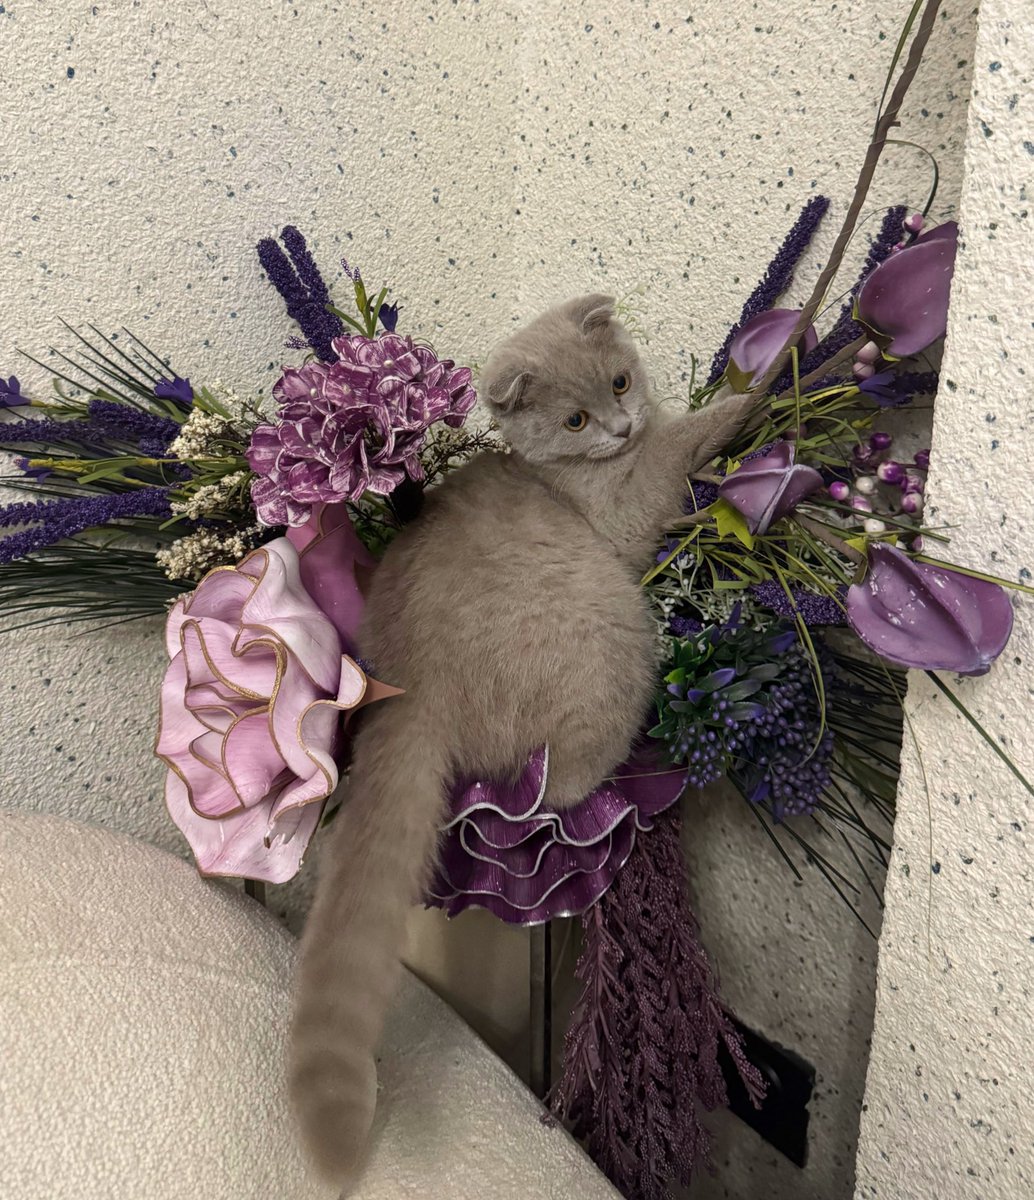 kedim kendini çiçek sanıyo napmalıyımm??